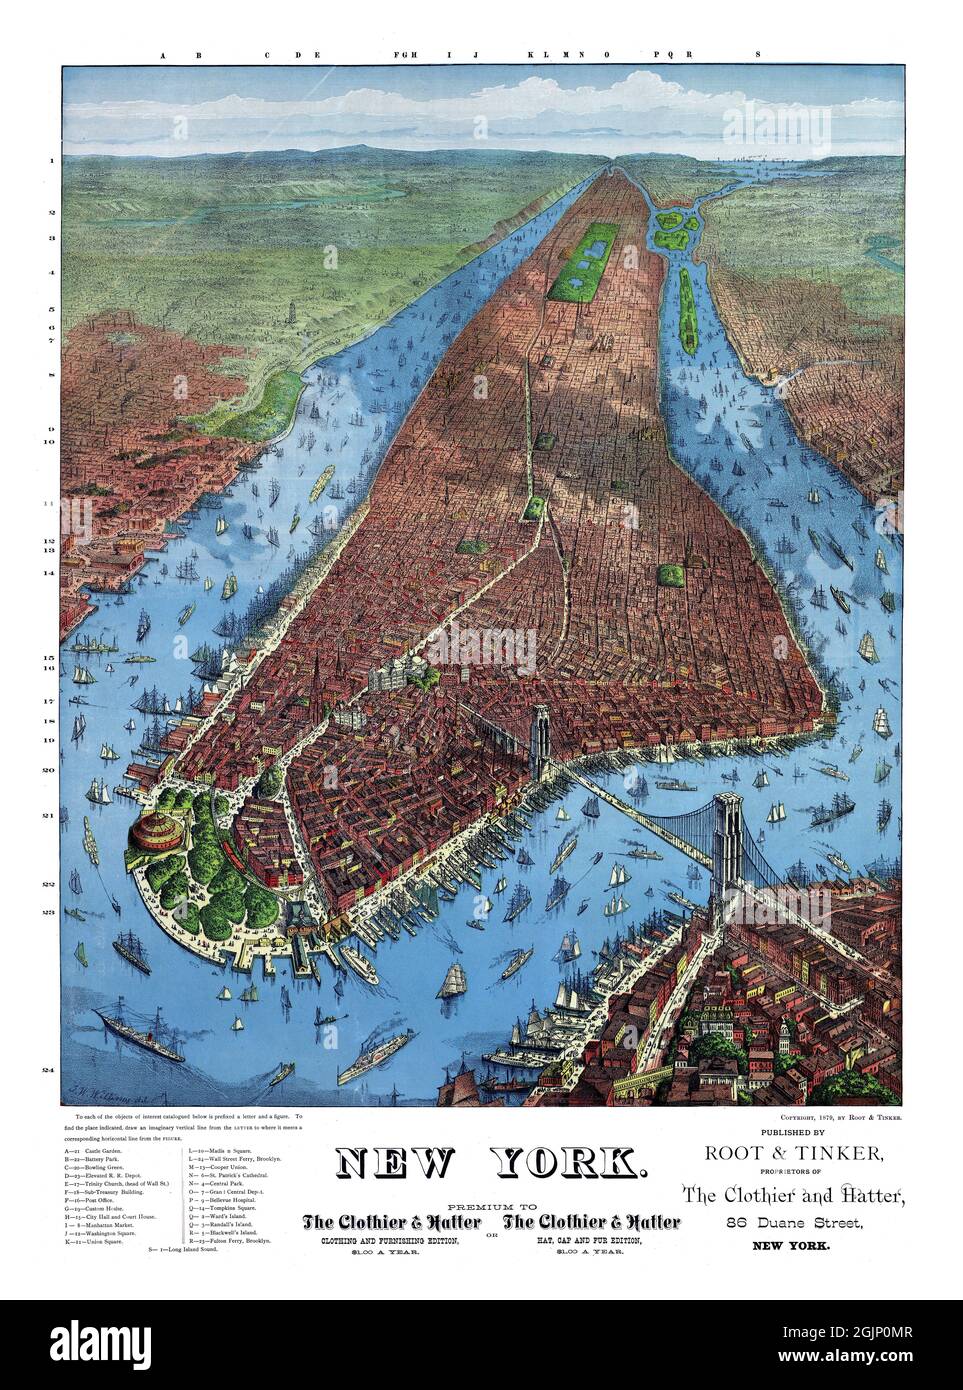 Perspektivische Karte von New York, nicht maßstabsgefaßt von J. W. Williams. Restauriertes Vintage-Poster, veröffentlicht von Root & Tinker, New York im Jahr 1879. Stockfoto